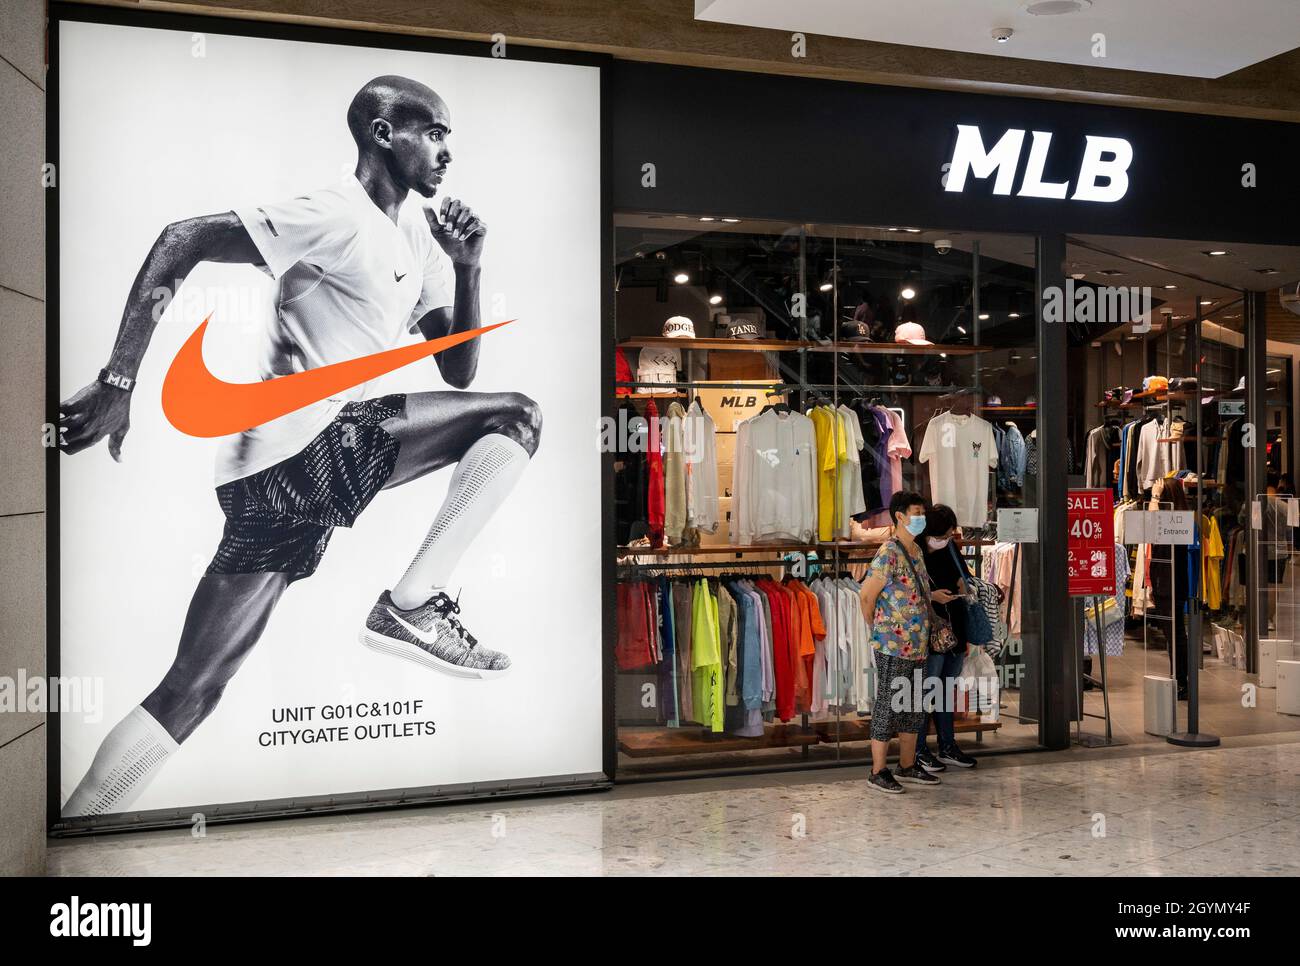 marca de ropa deportiva multinacional americana Nike y la organización profesional de béisbol, las tiendas de las Grandes Ligas de Béisbol (MLB) en Hong Kong Fotografía de stock - Alamy